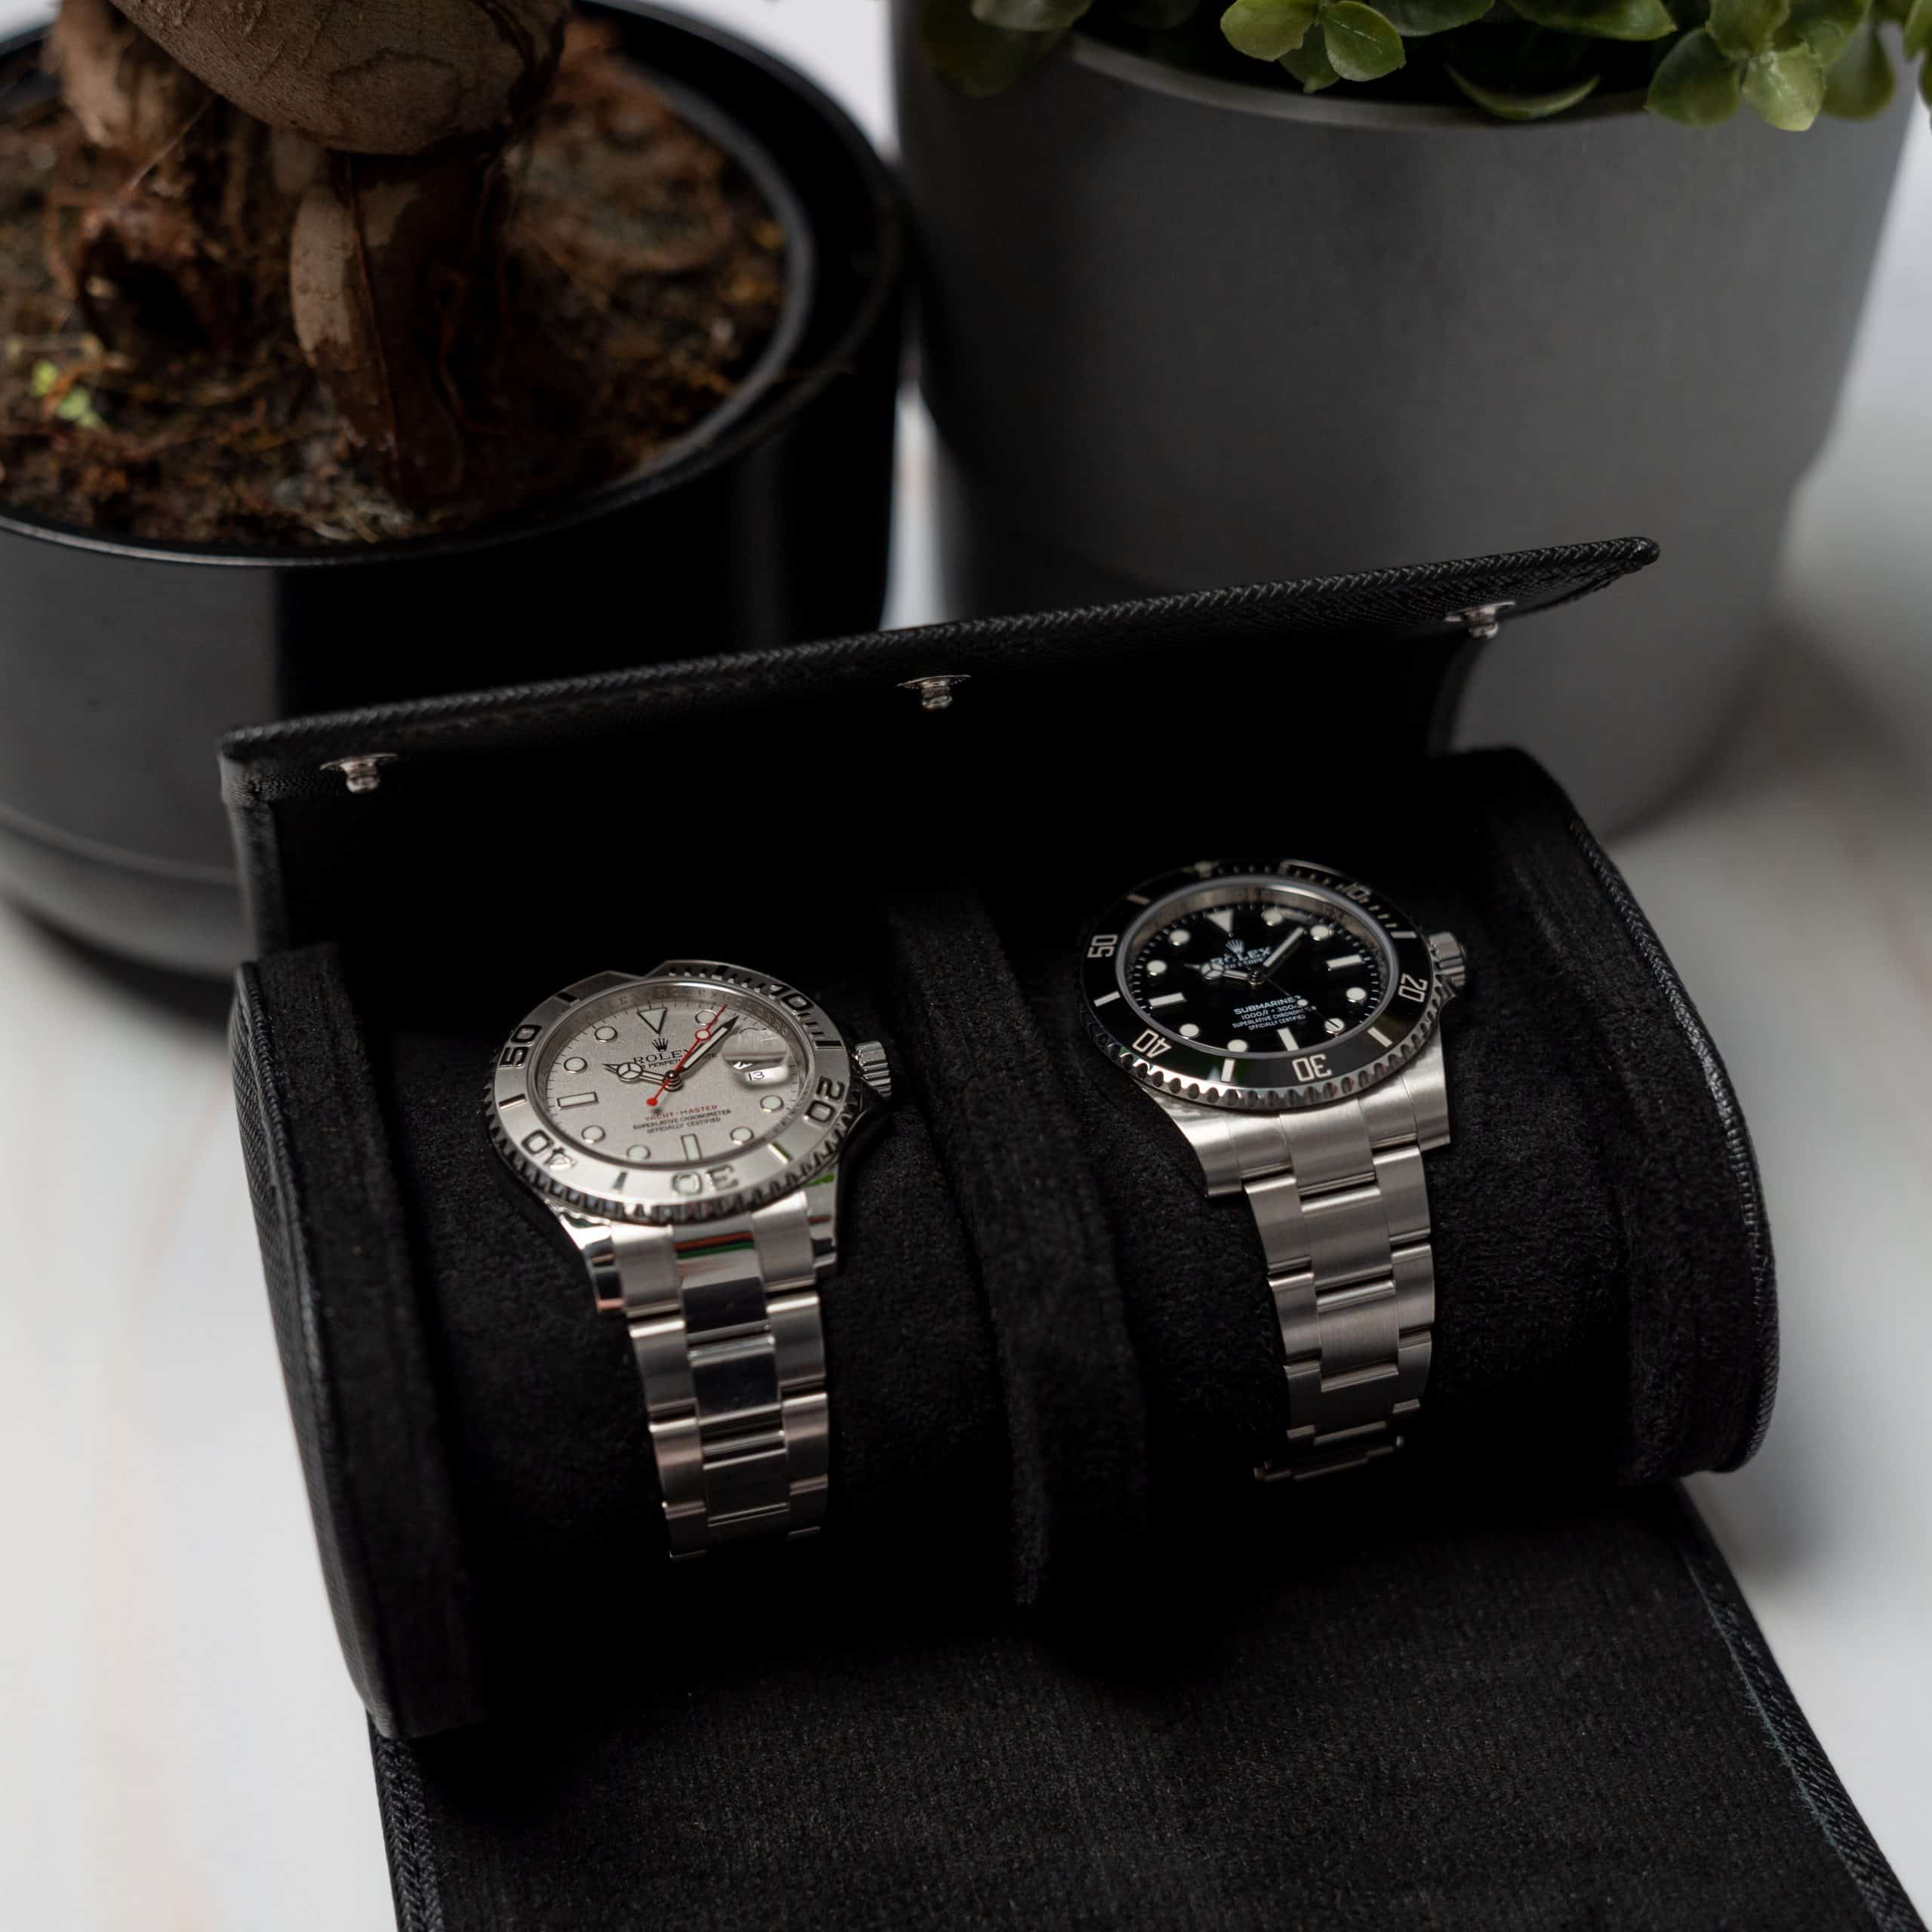 Uhrenrolle für zwei Uhren – schwarzes Saffiano - €139 - Free shipping